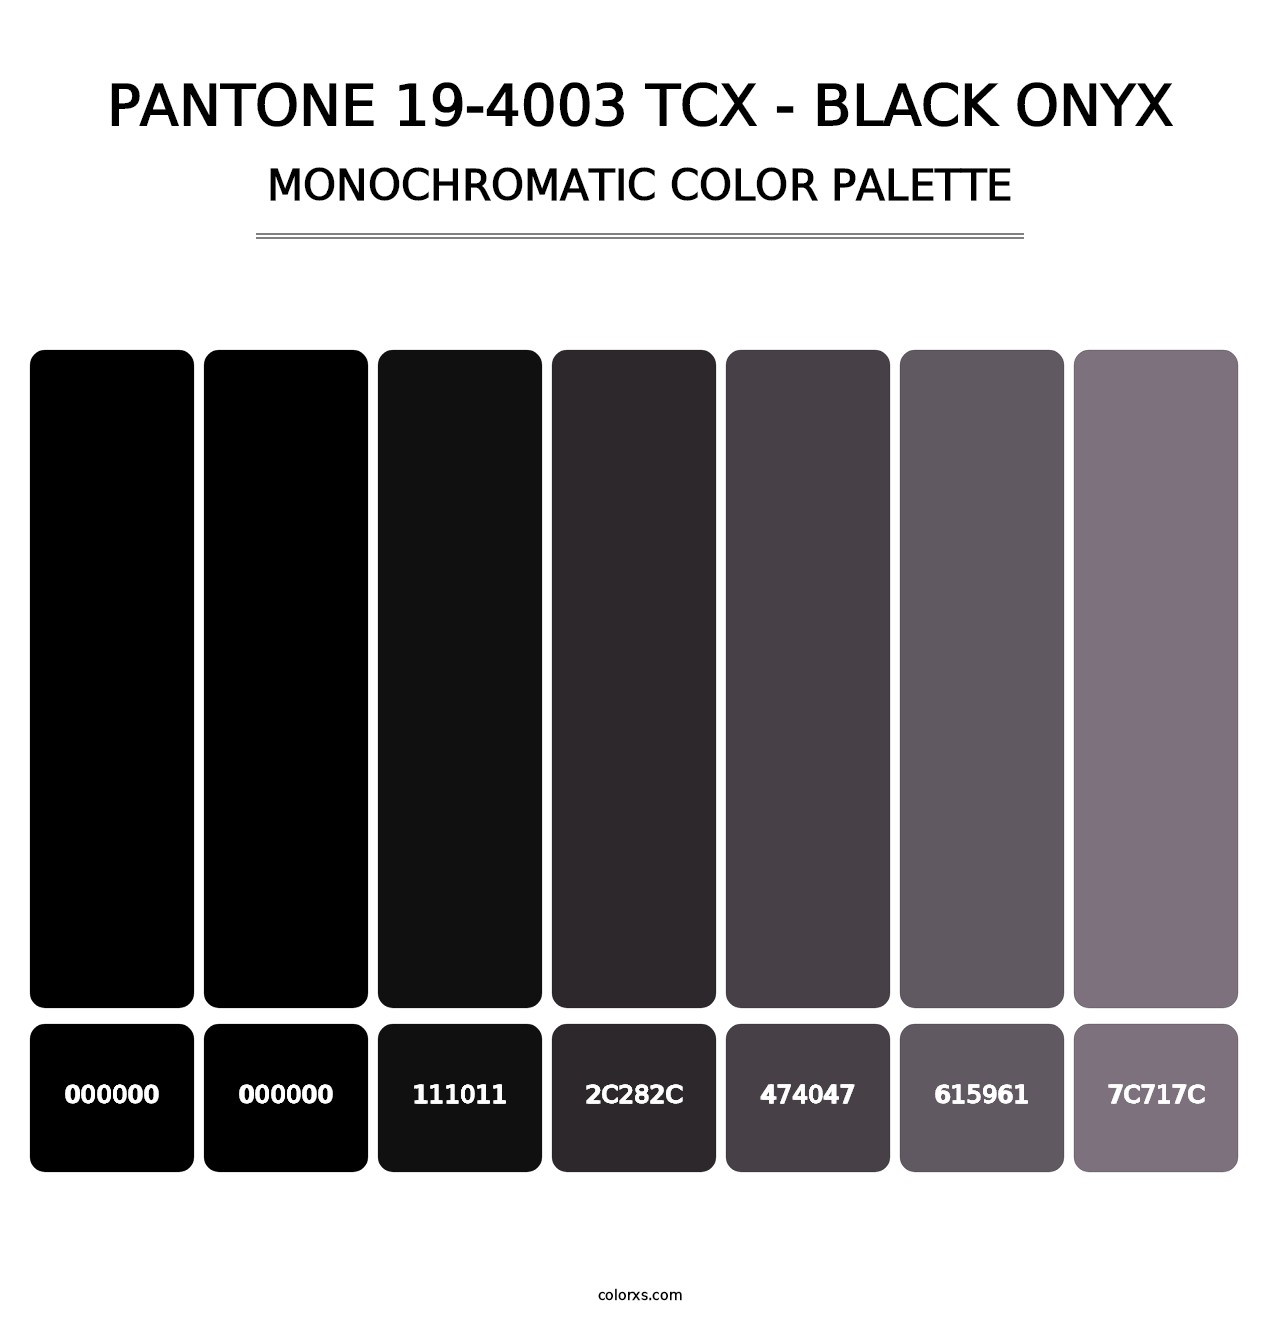 PANTONE 19-4003 TCX - Black Onyx - Monochromatic Color Palette